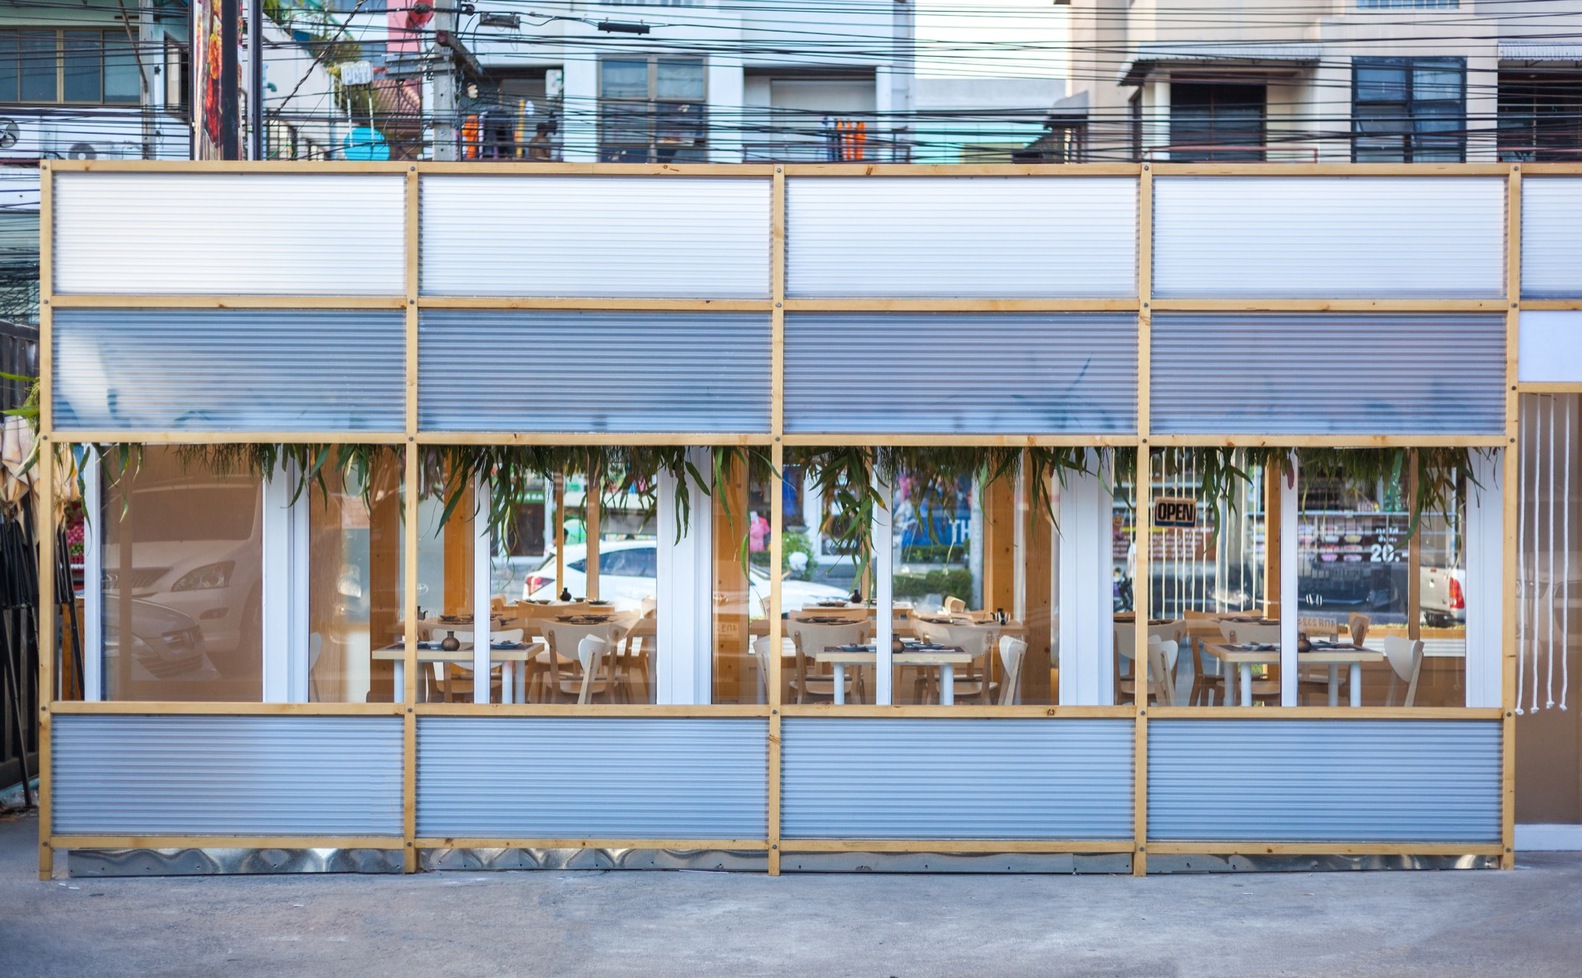 NiGiRi Sushi and Restaurant  Junsekino Architect And Design